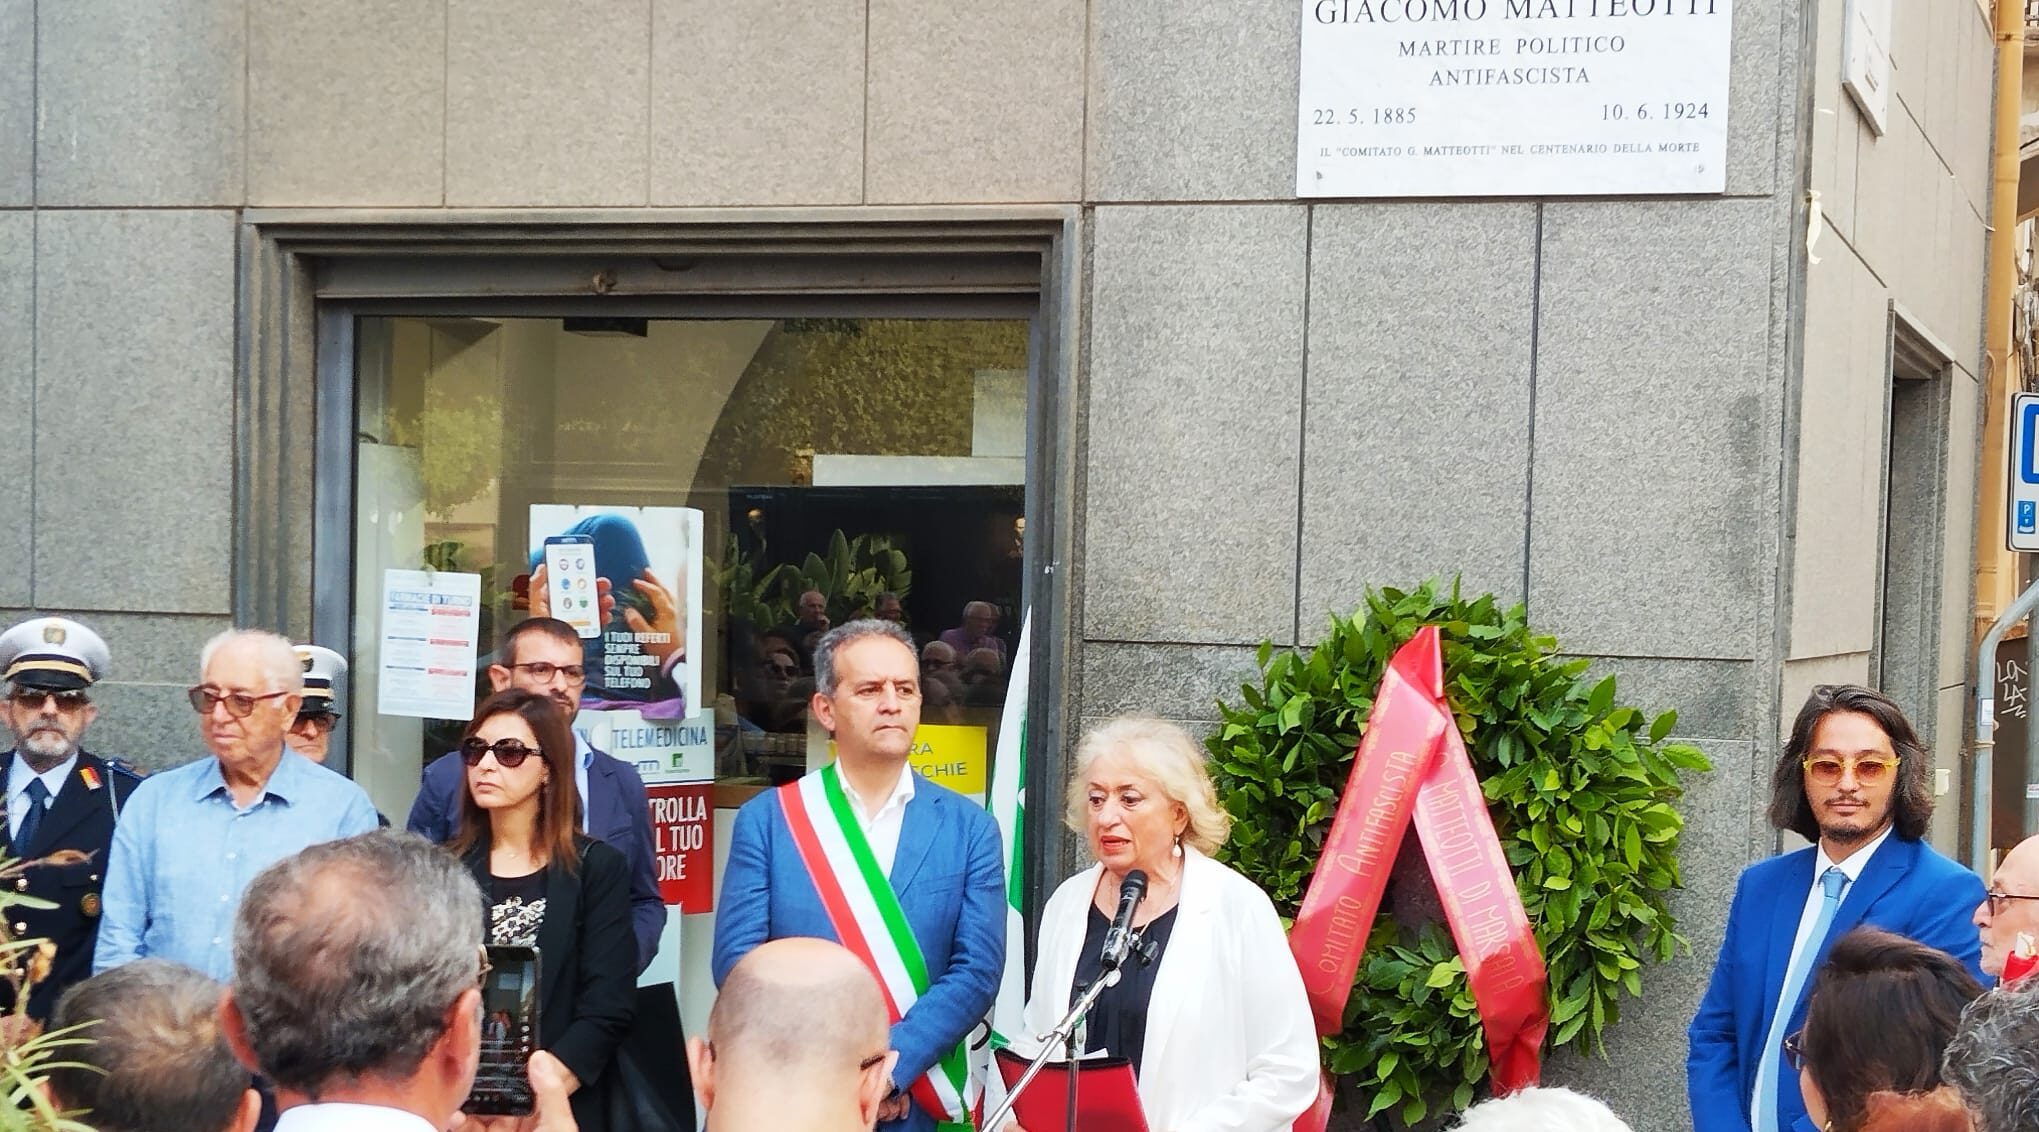 A Marsala il ricordo di Giacomo Matteotti, “martire politico antifascista”. Il Comitato assumerà carattere permanente